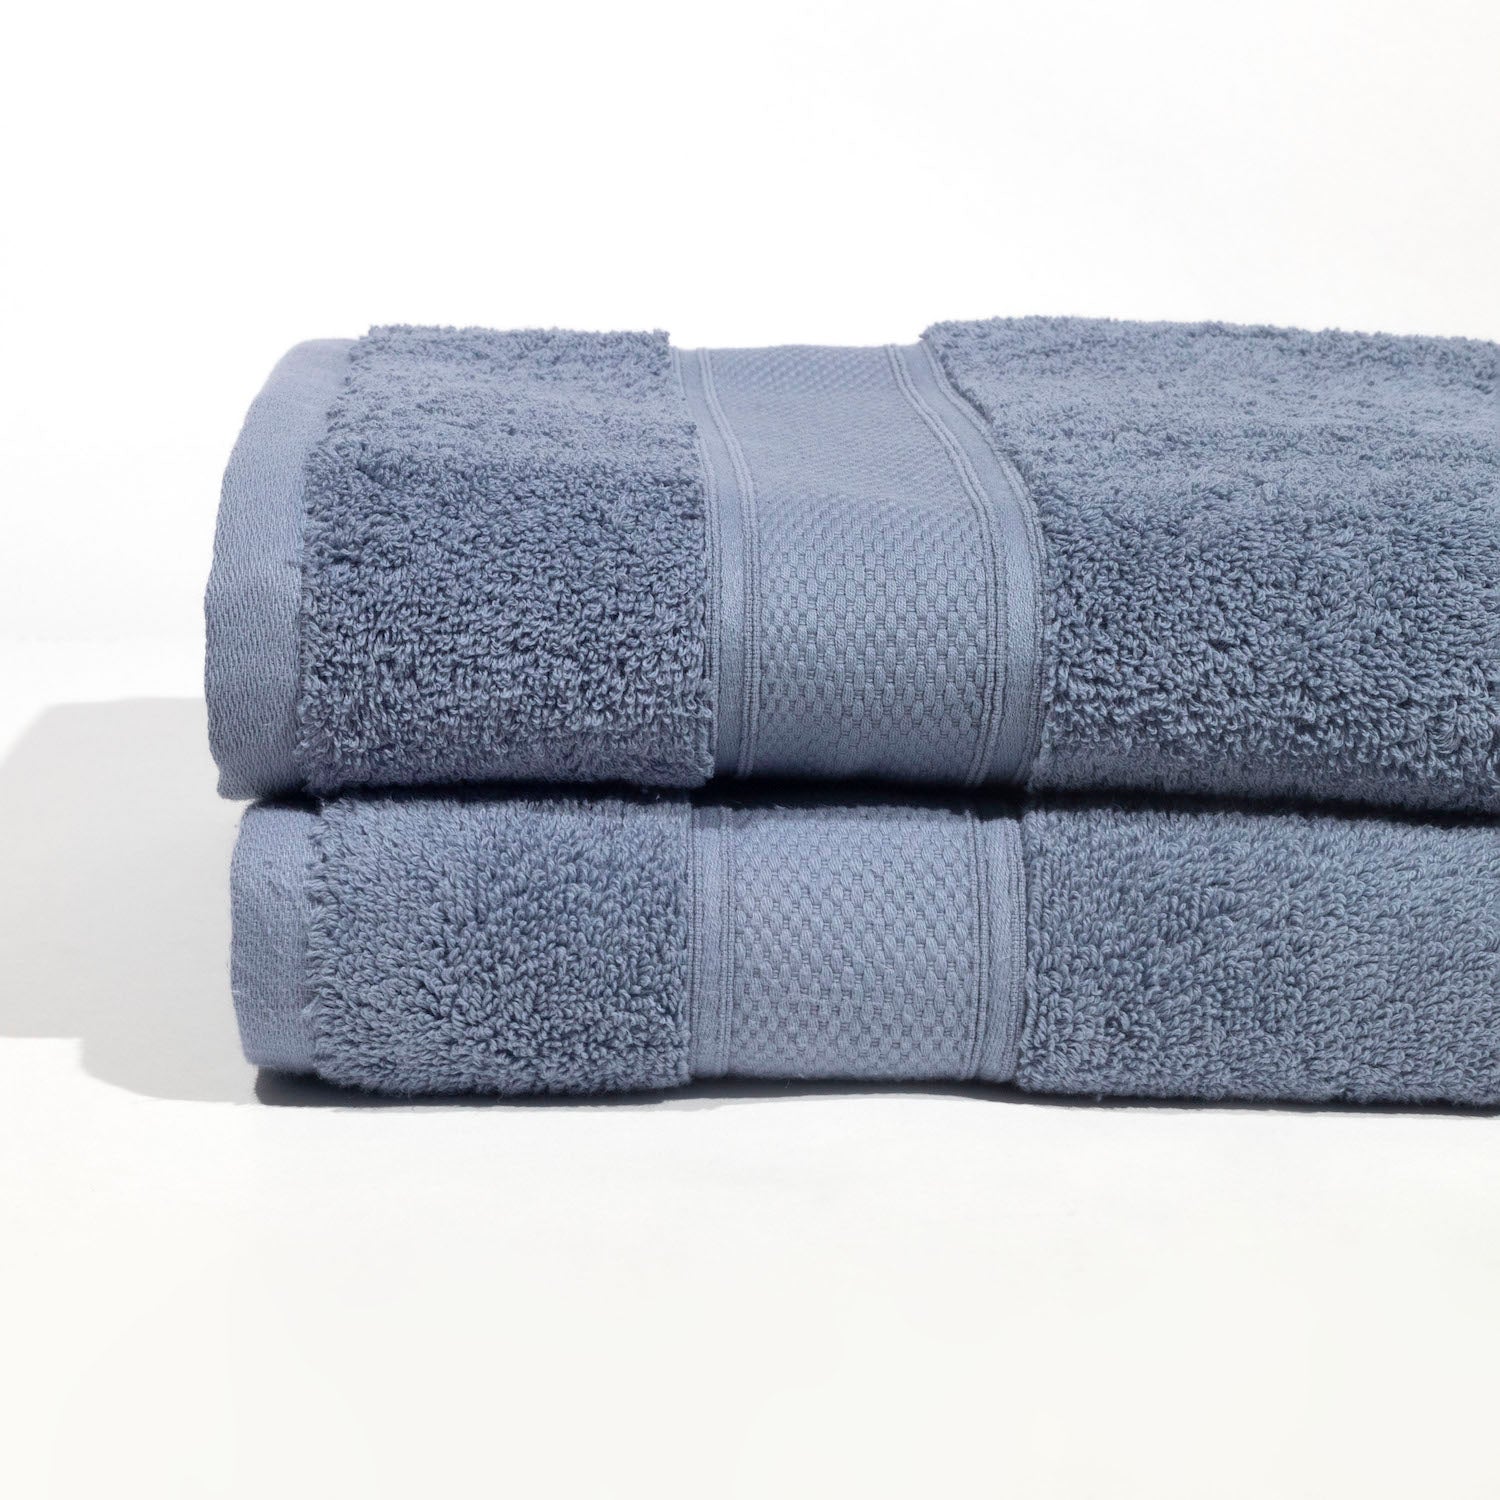 Pinehurst Bath Towel Pair